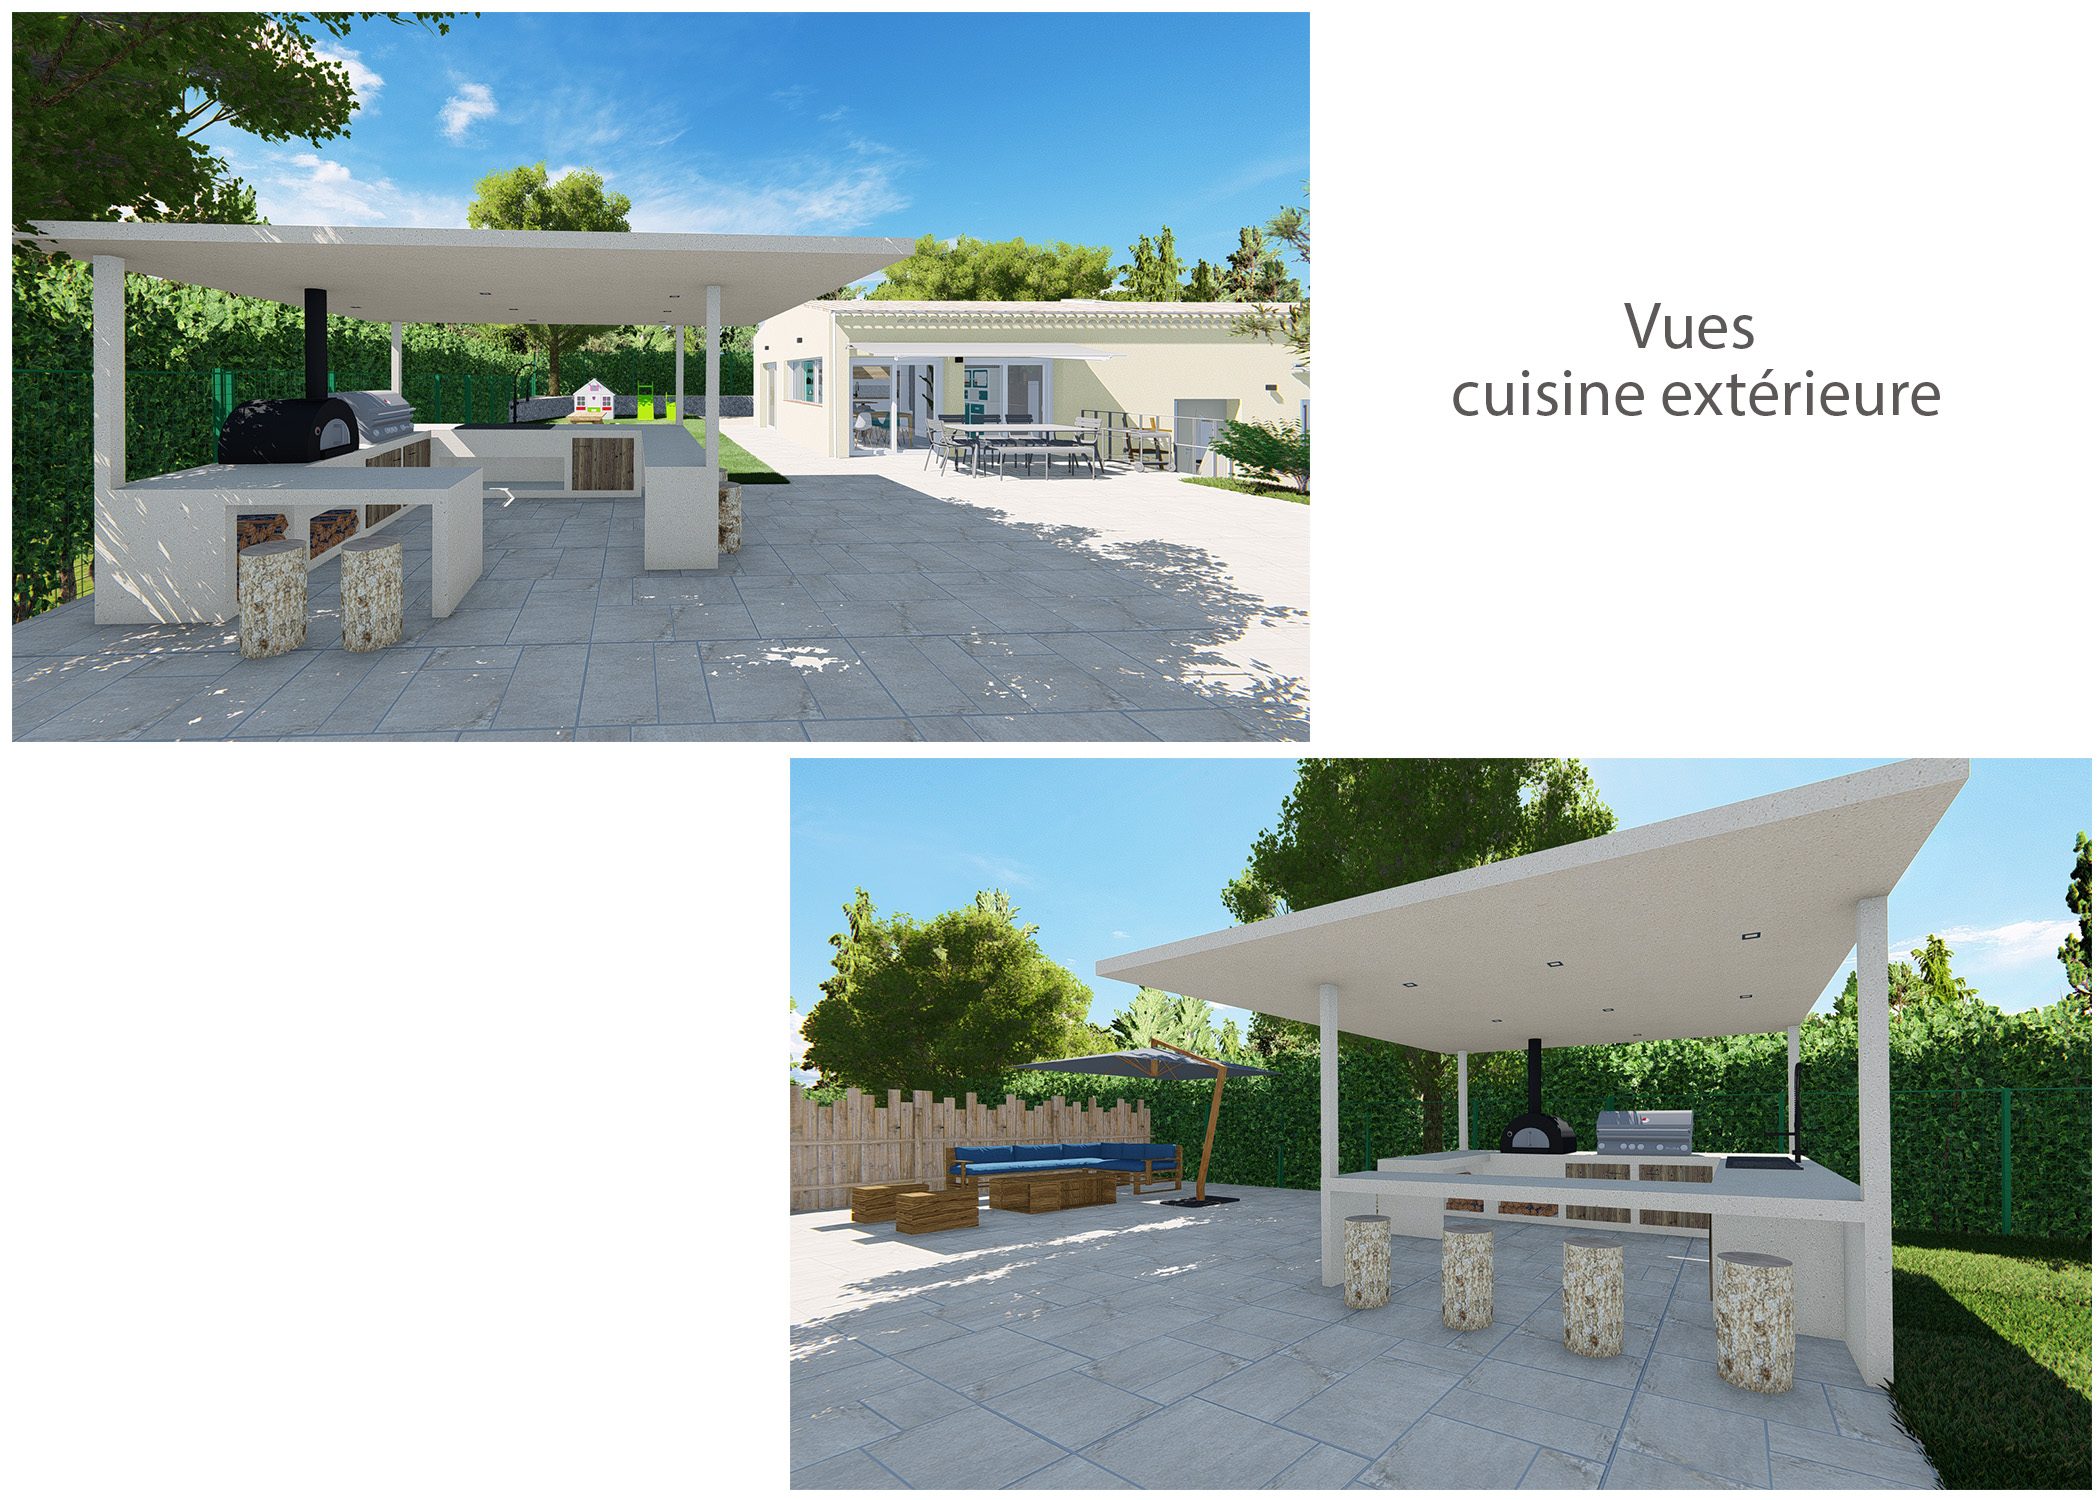 amenagement-terrain-maison de famille-fuveau-rendus terrasse cuisine exterieure-dekho design